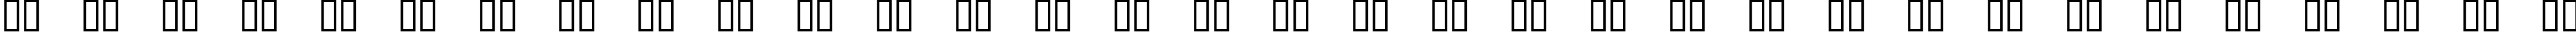 Пример написания русского алфавита шрифтом Gameboy Gamegirl